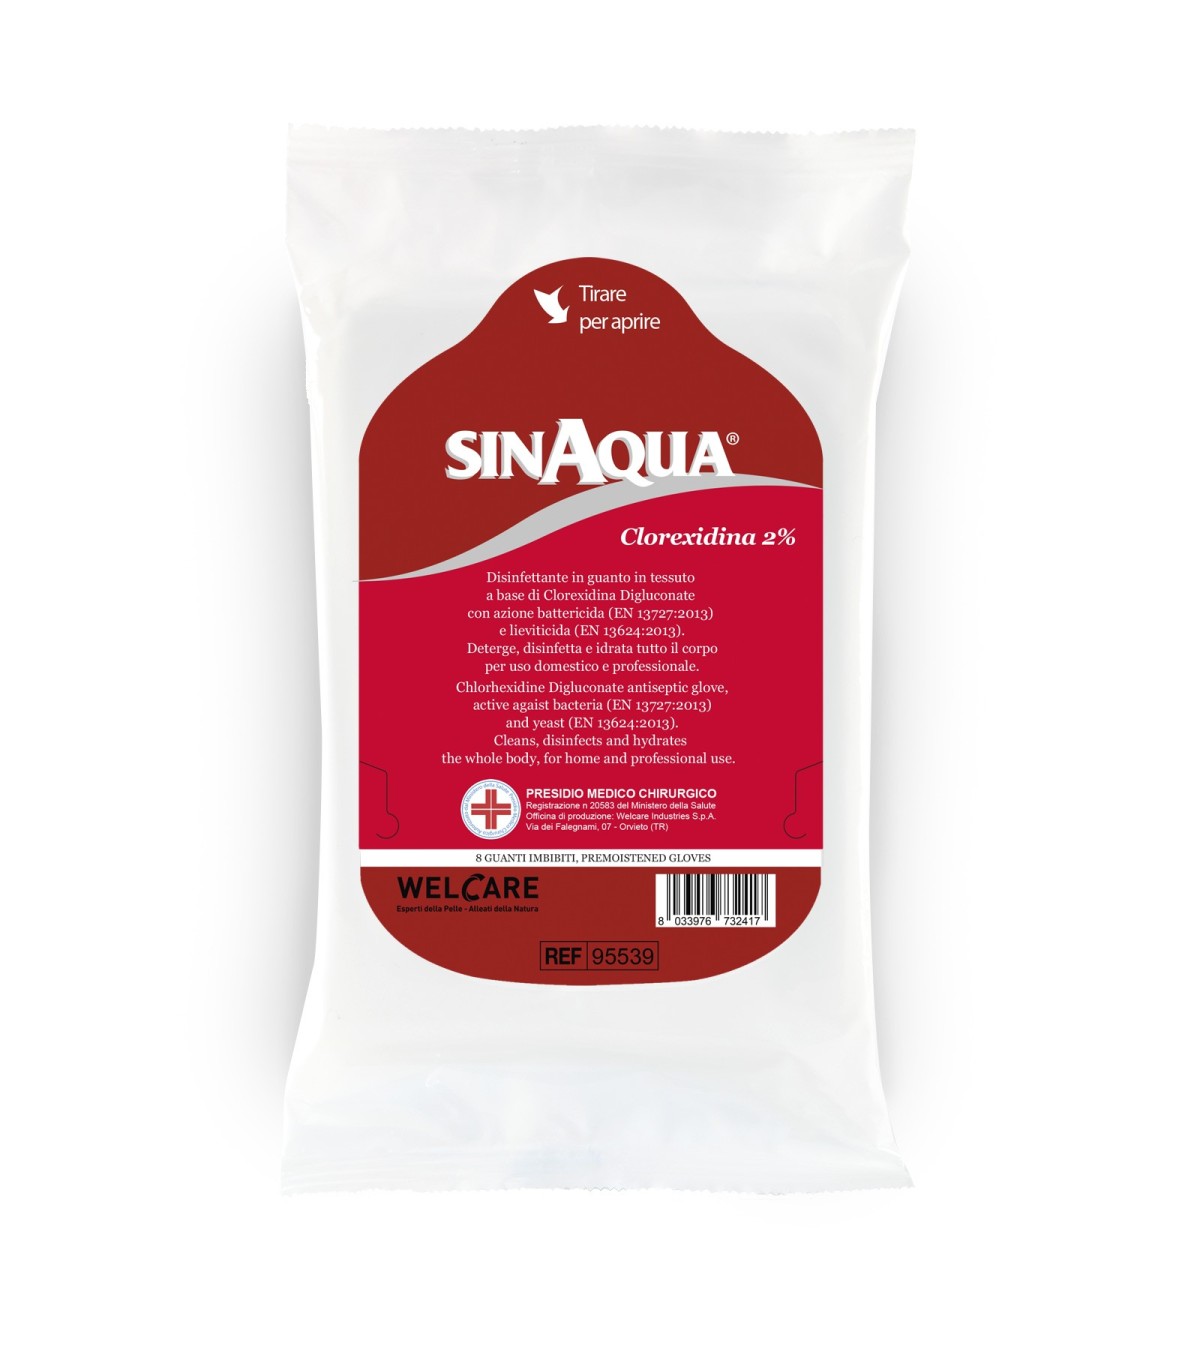 Sinaqua® Clorexidina 2% Guanto